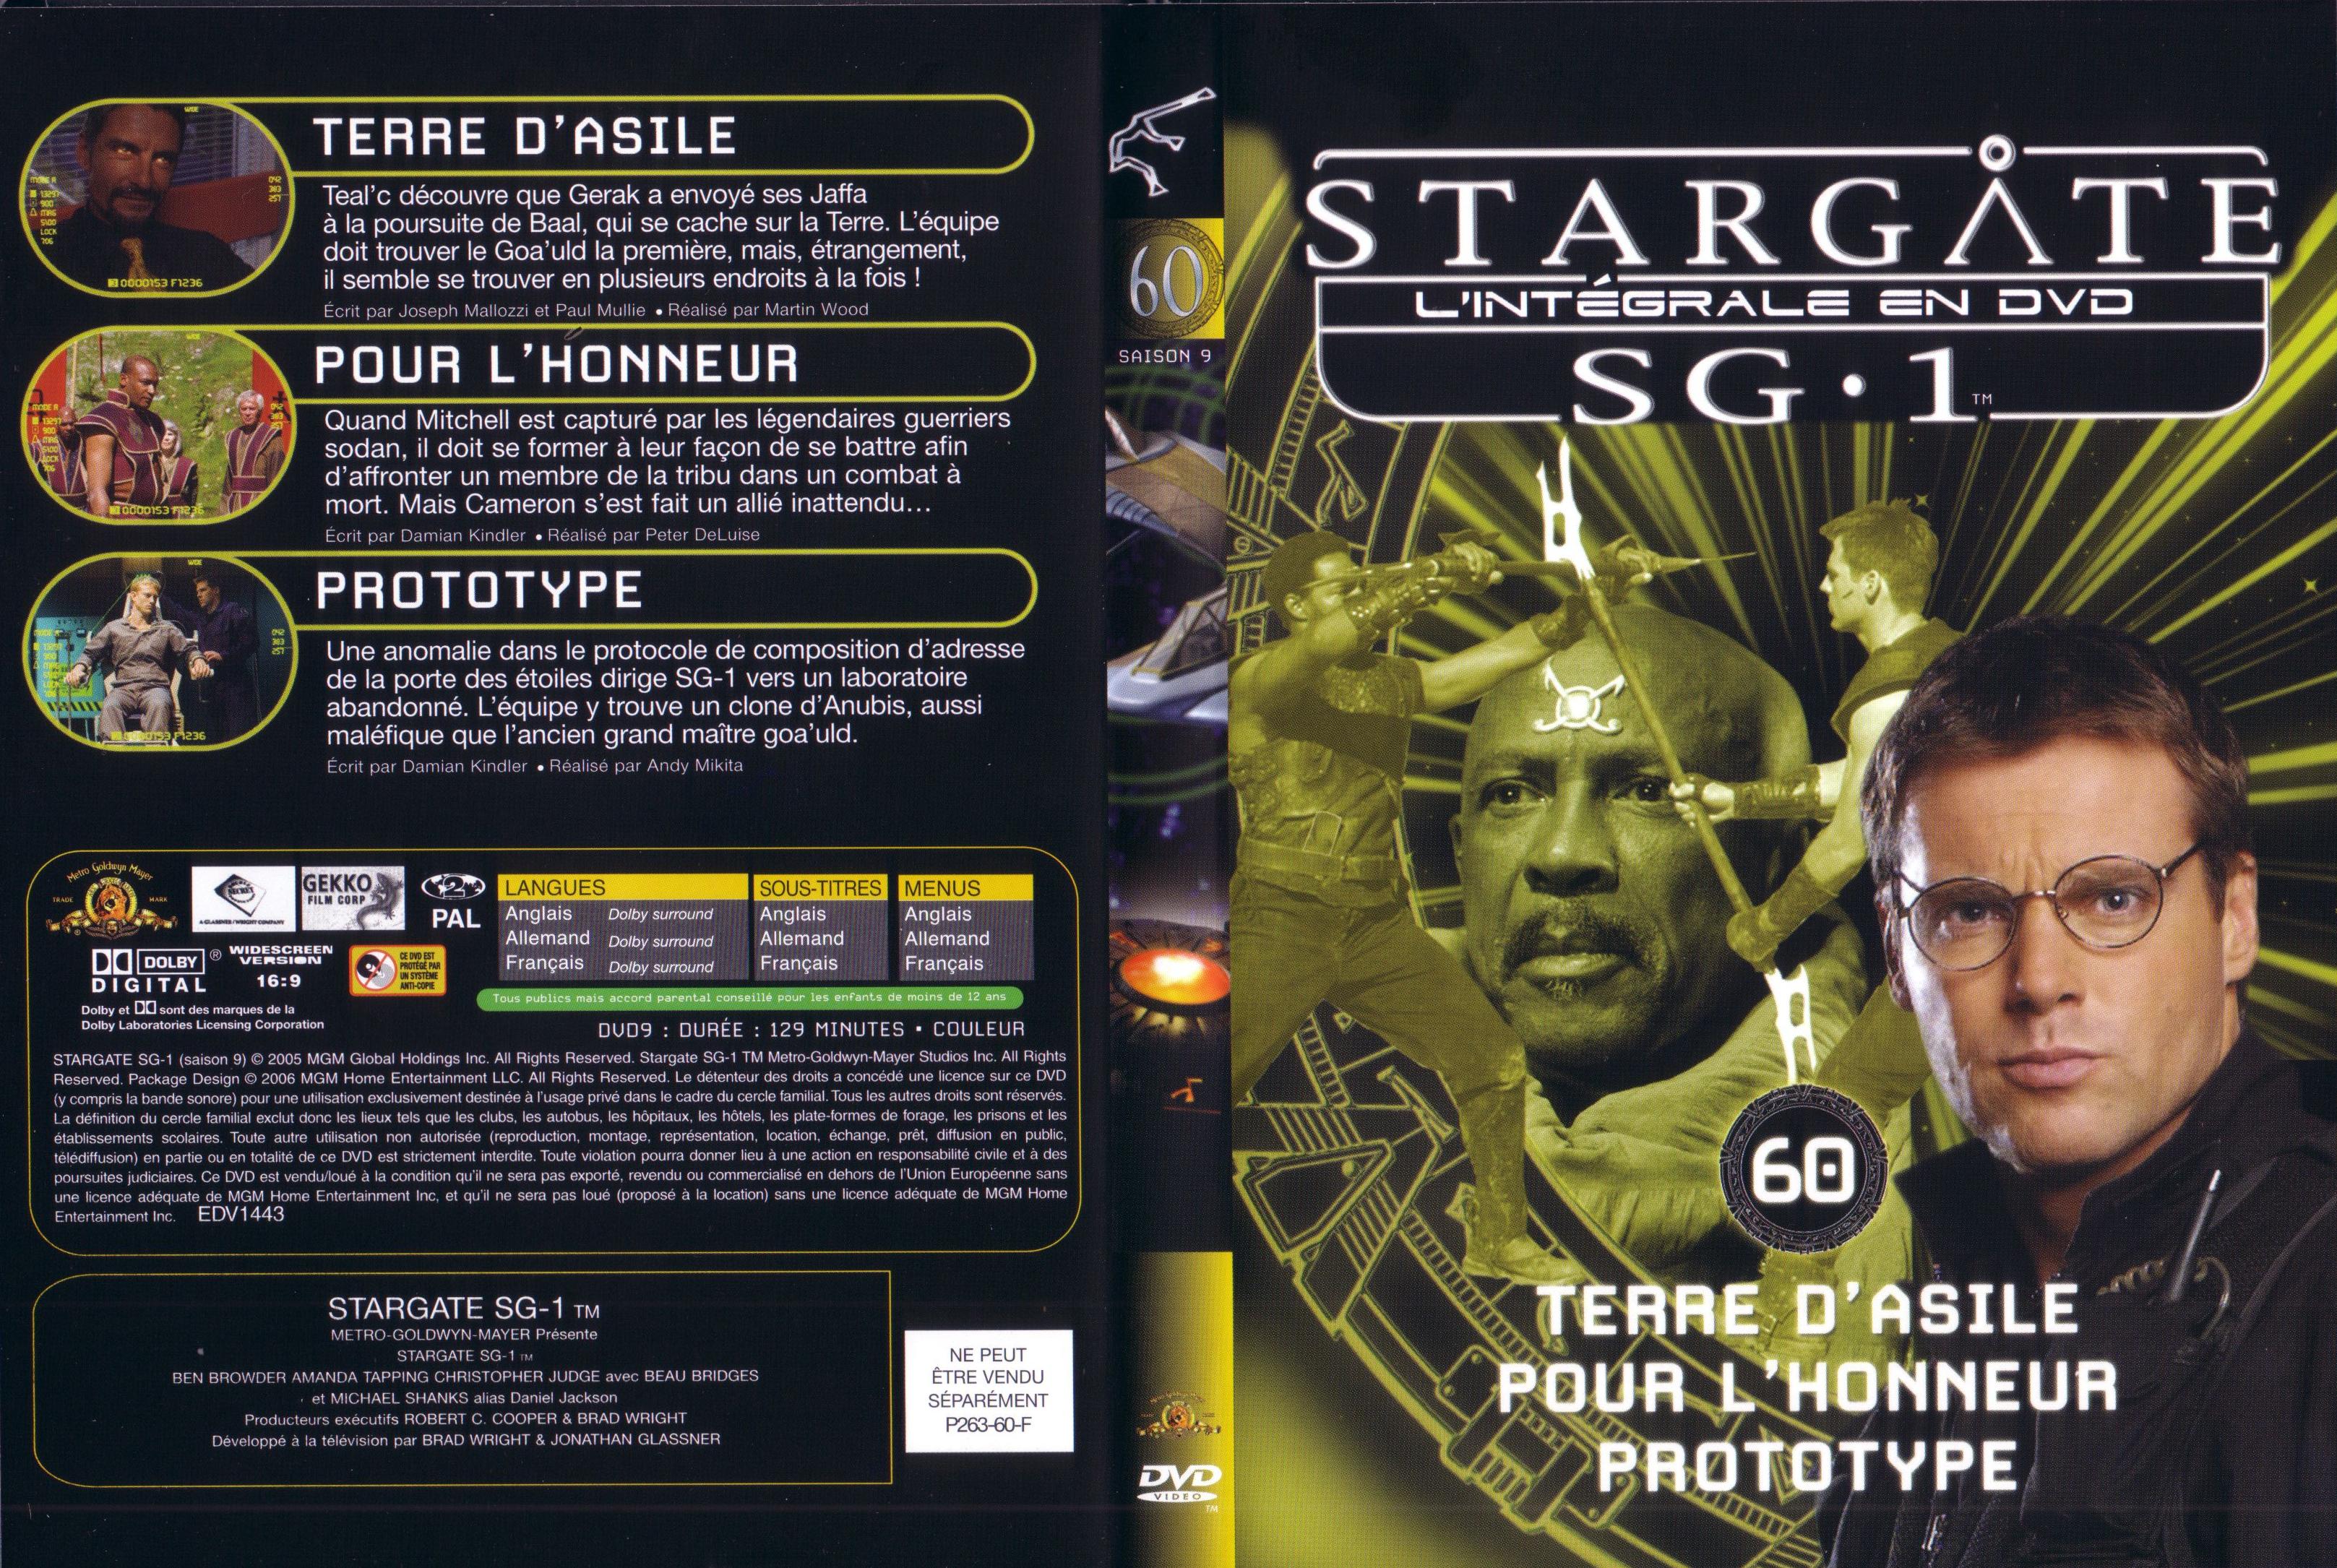 Jaquette DVD Stargate saison 9 vol 60